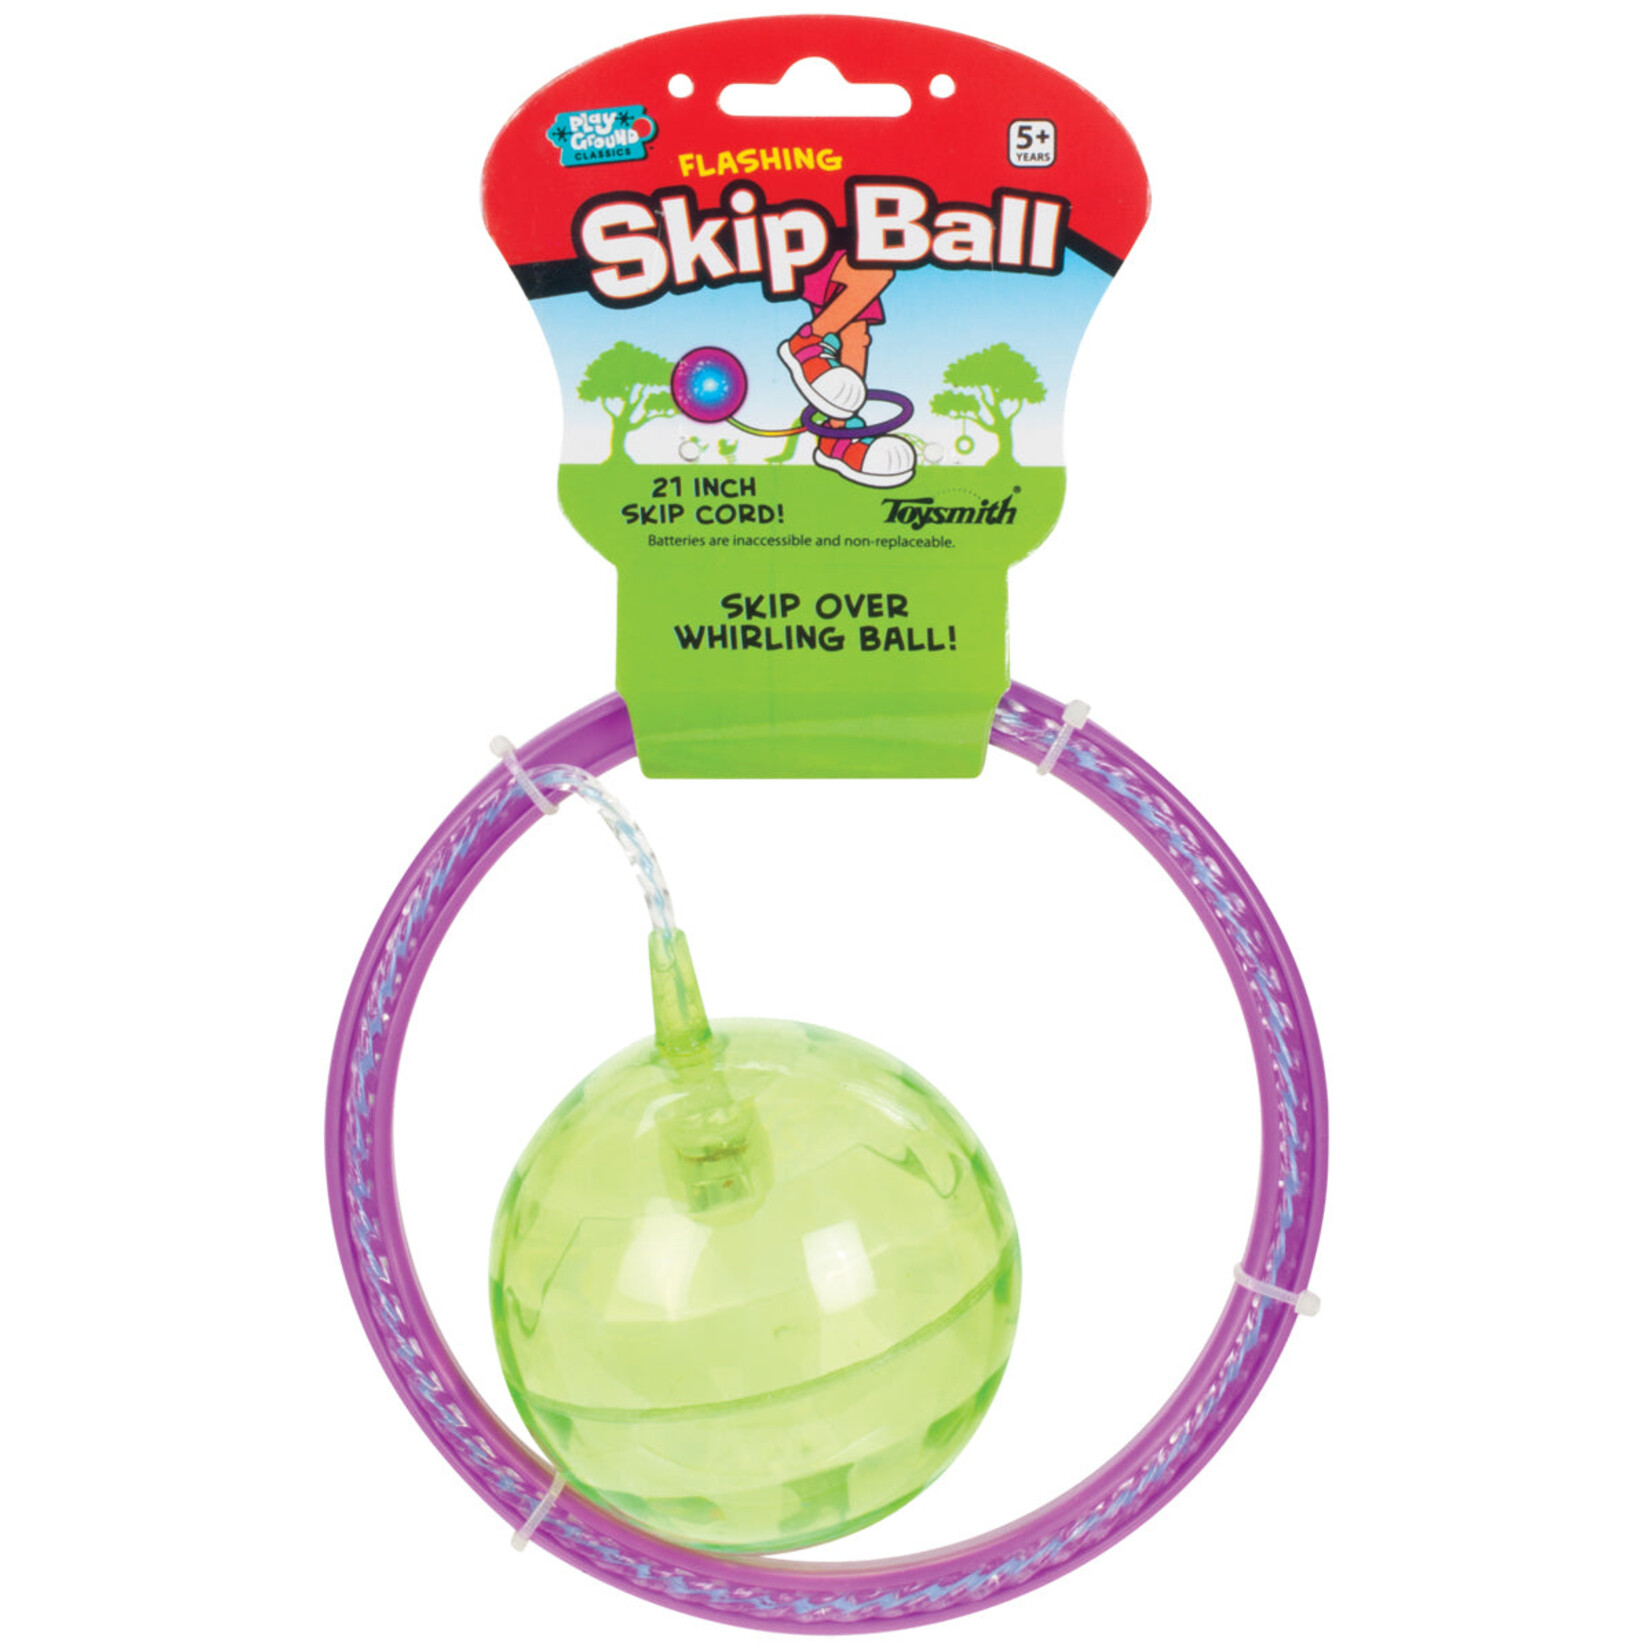 toysmith flashing skip ball